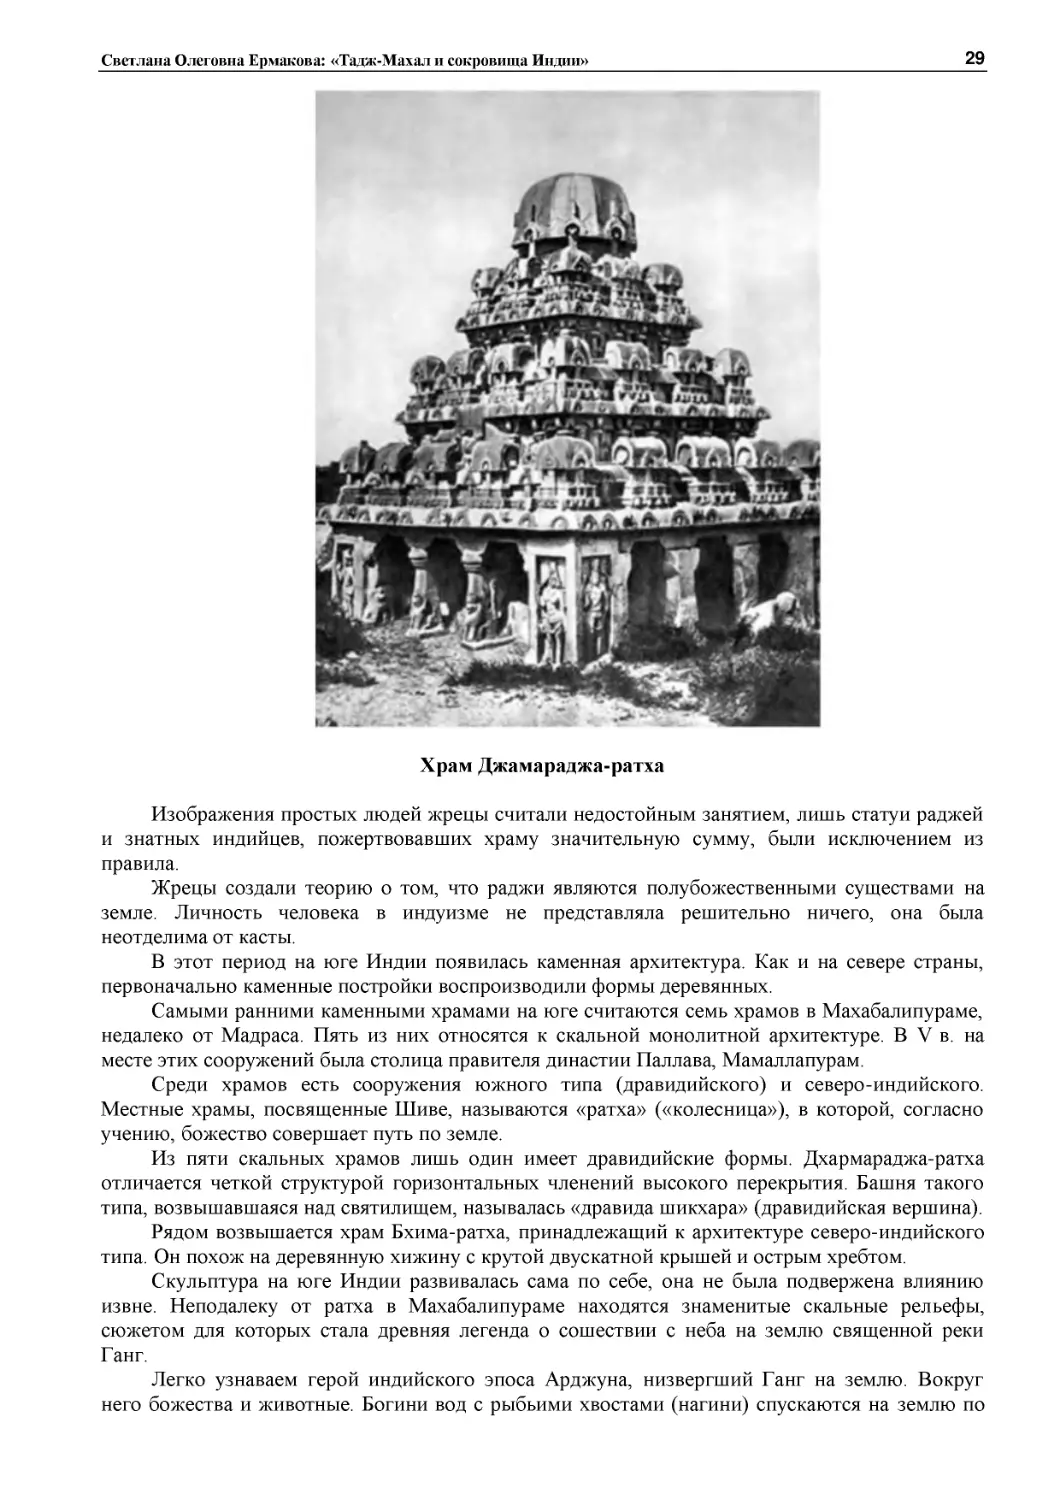 ﻿Храм Джамараджа-ратх